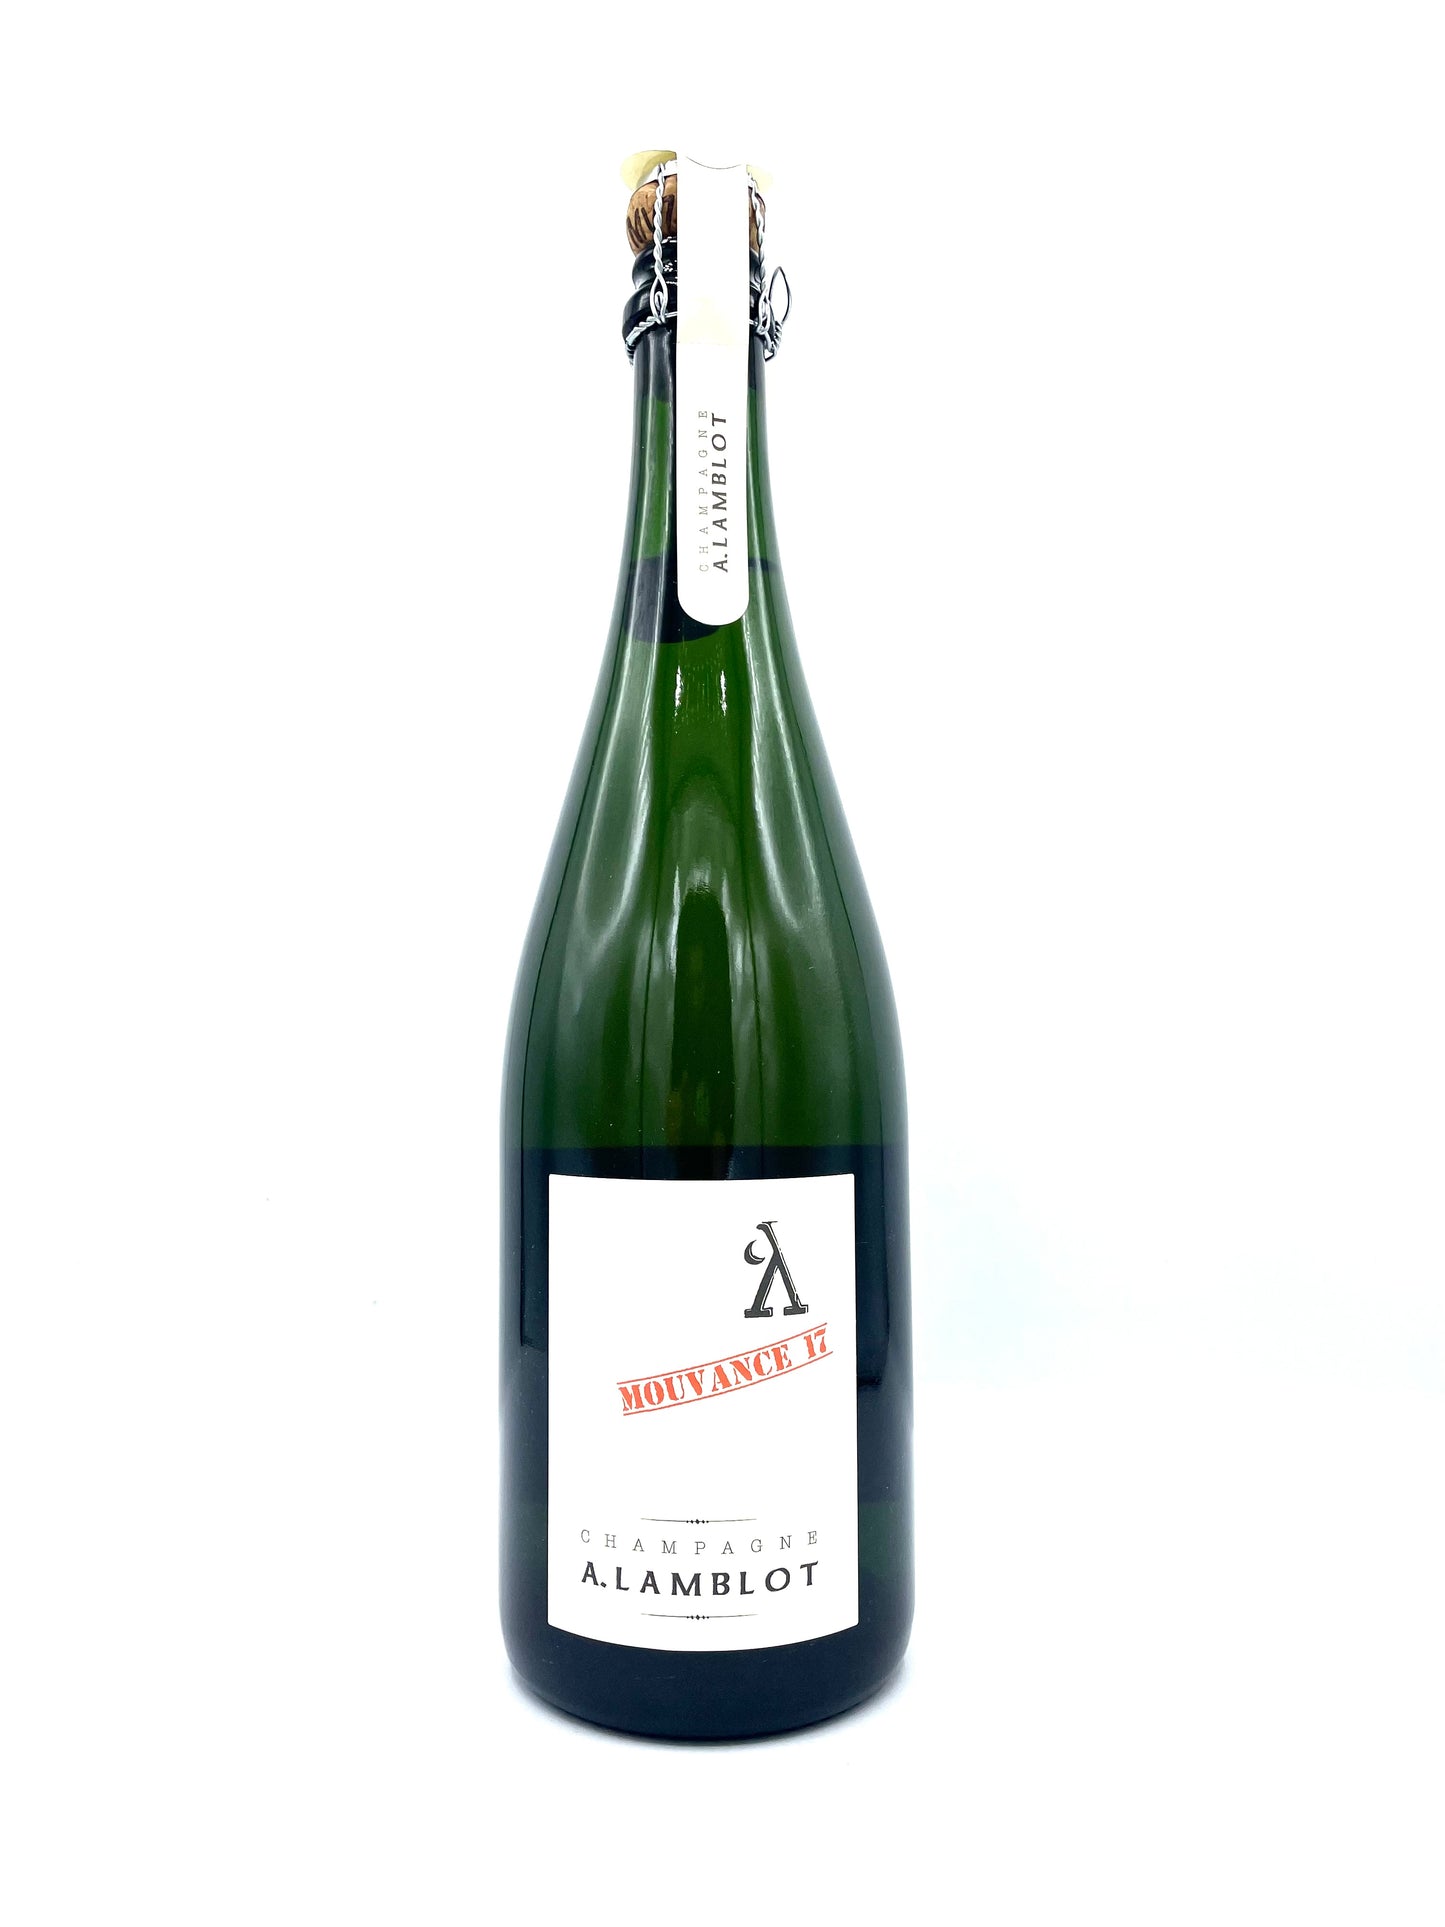 Champagne A. Lamblot 'Mouvance' 2017